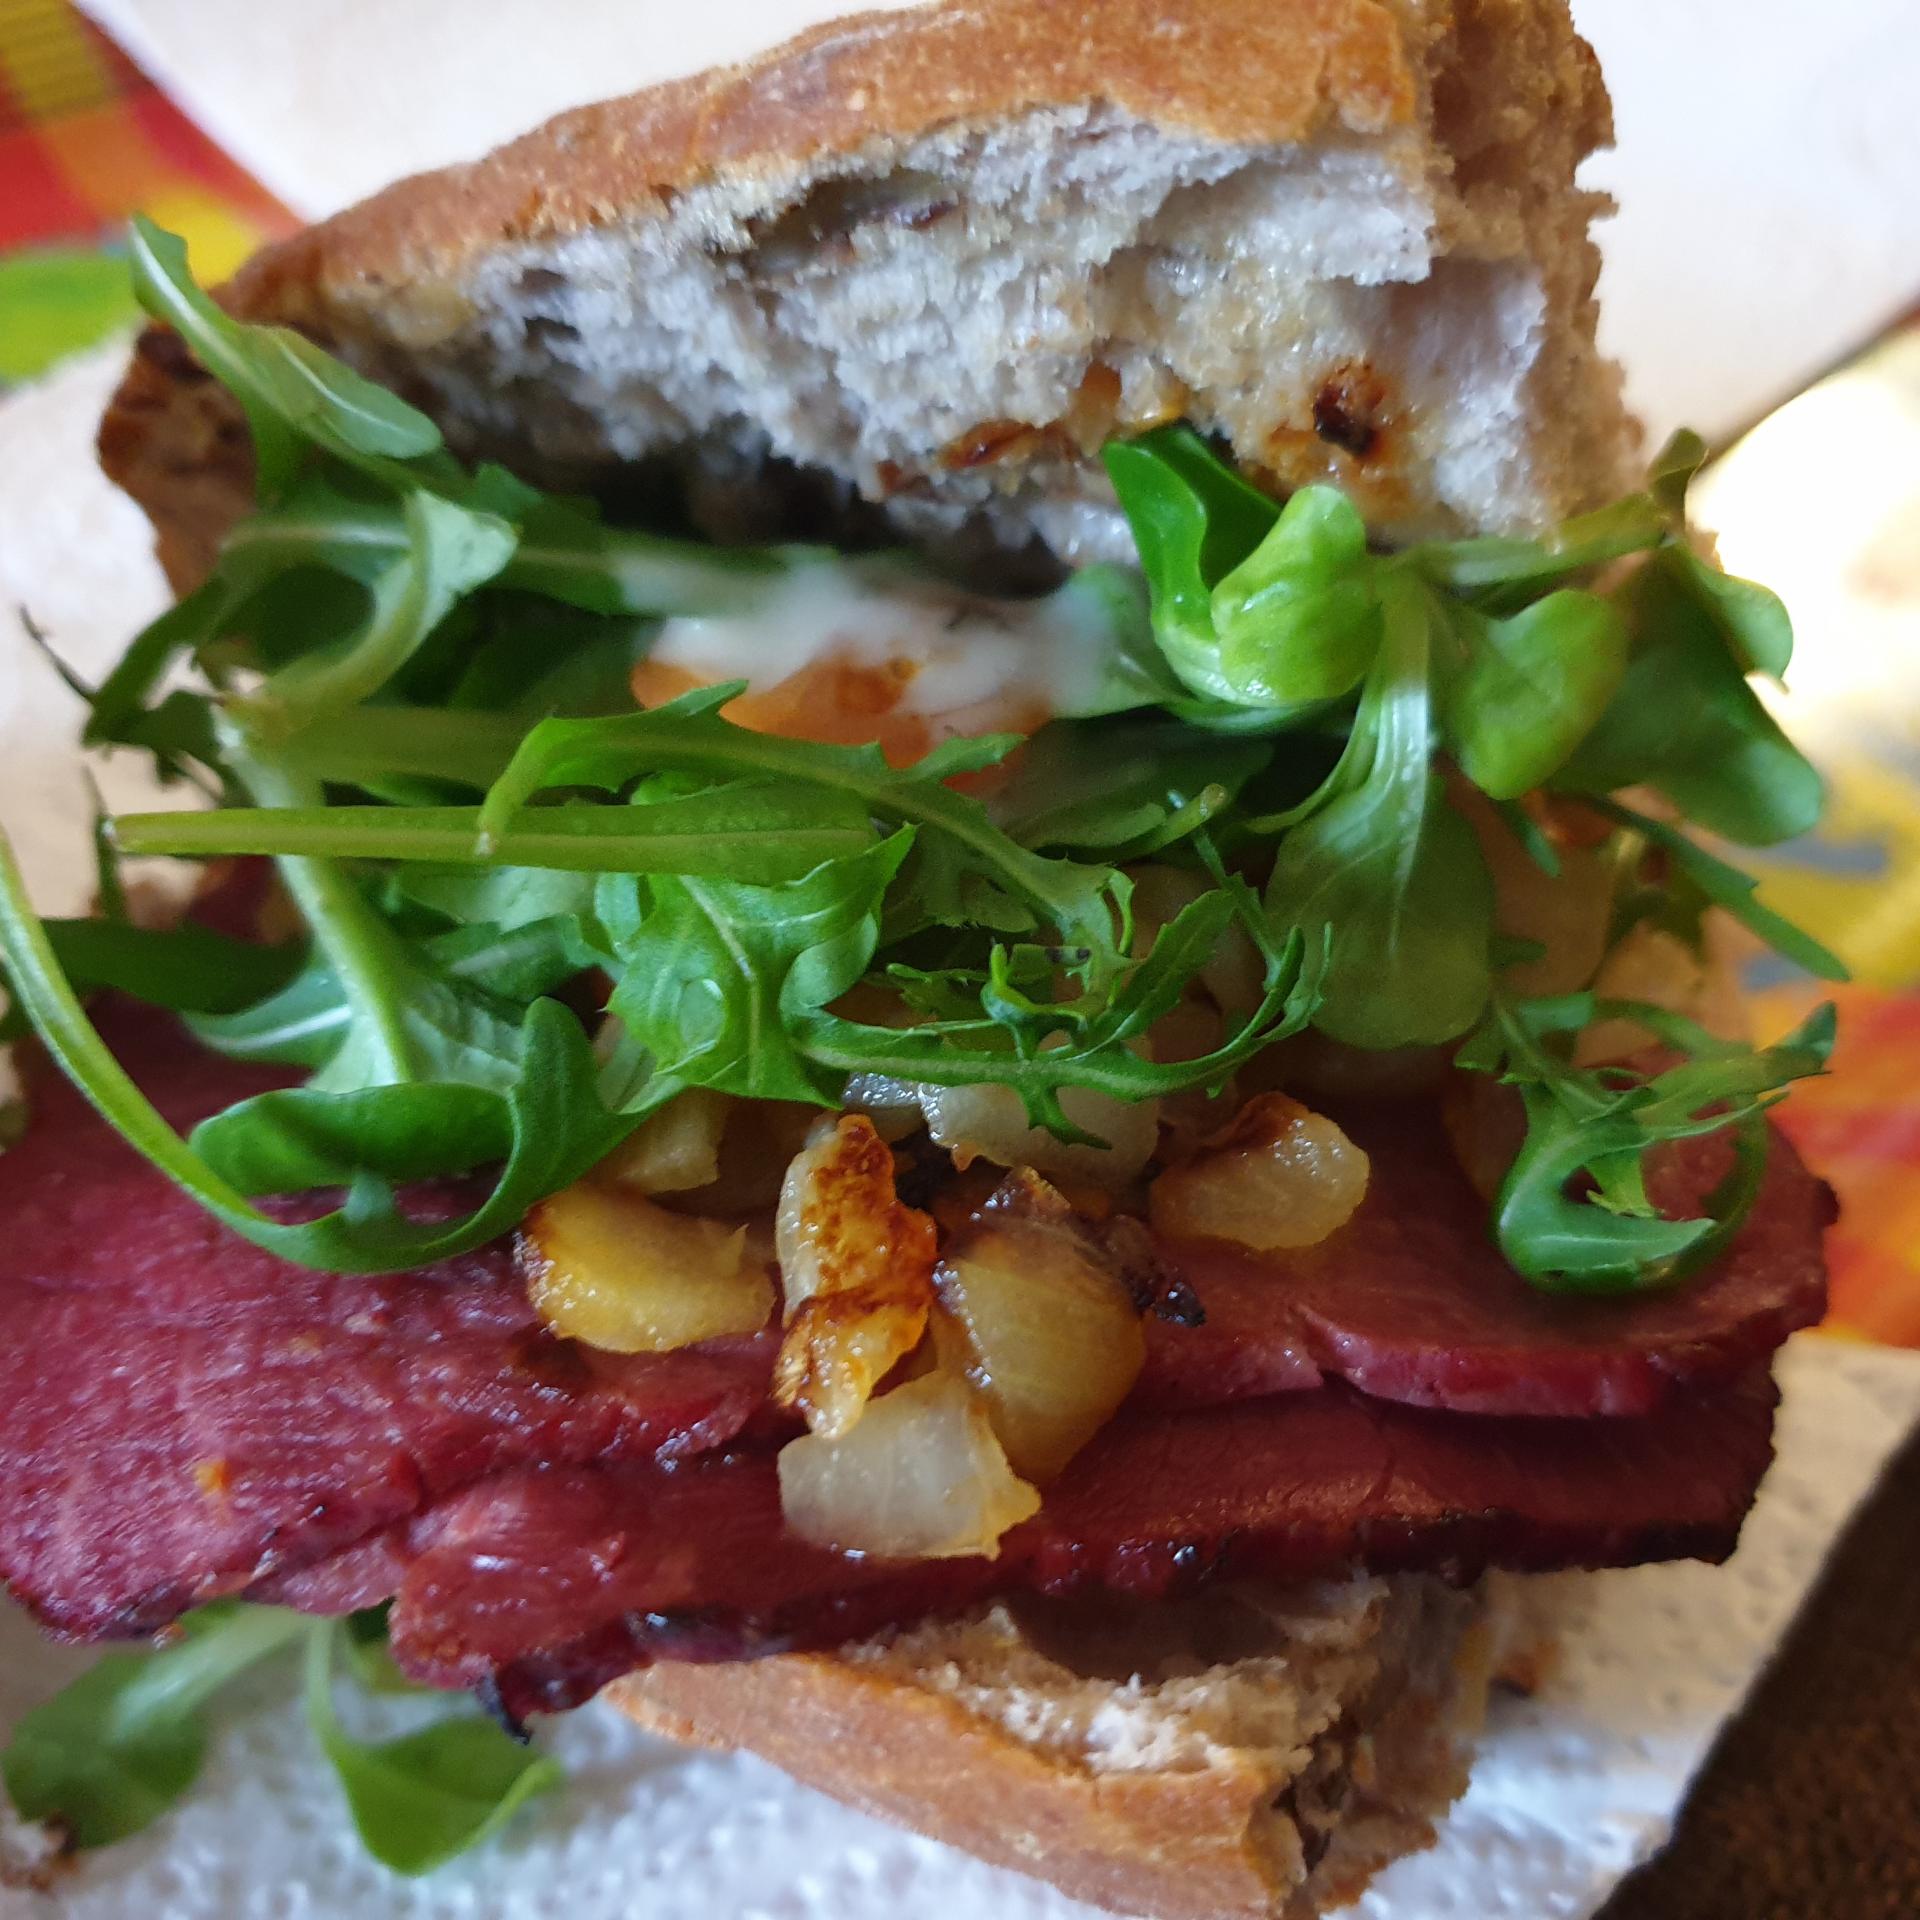 Recette de cuisine : Sandwich tranches de boeuf, salade